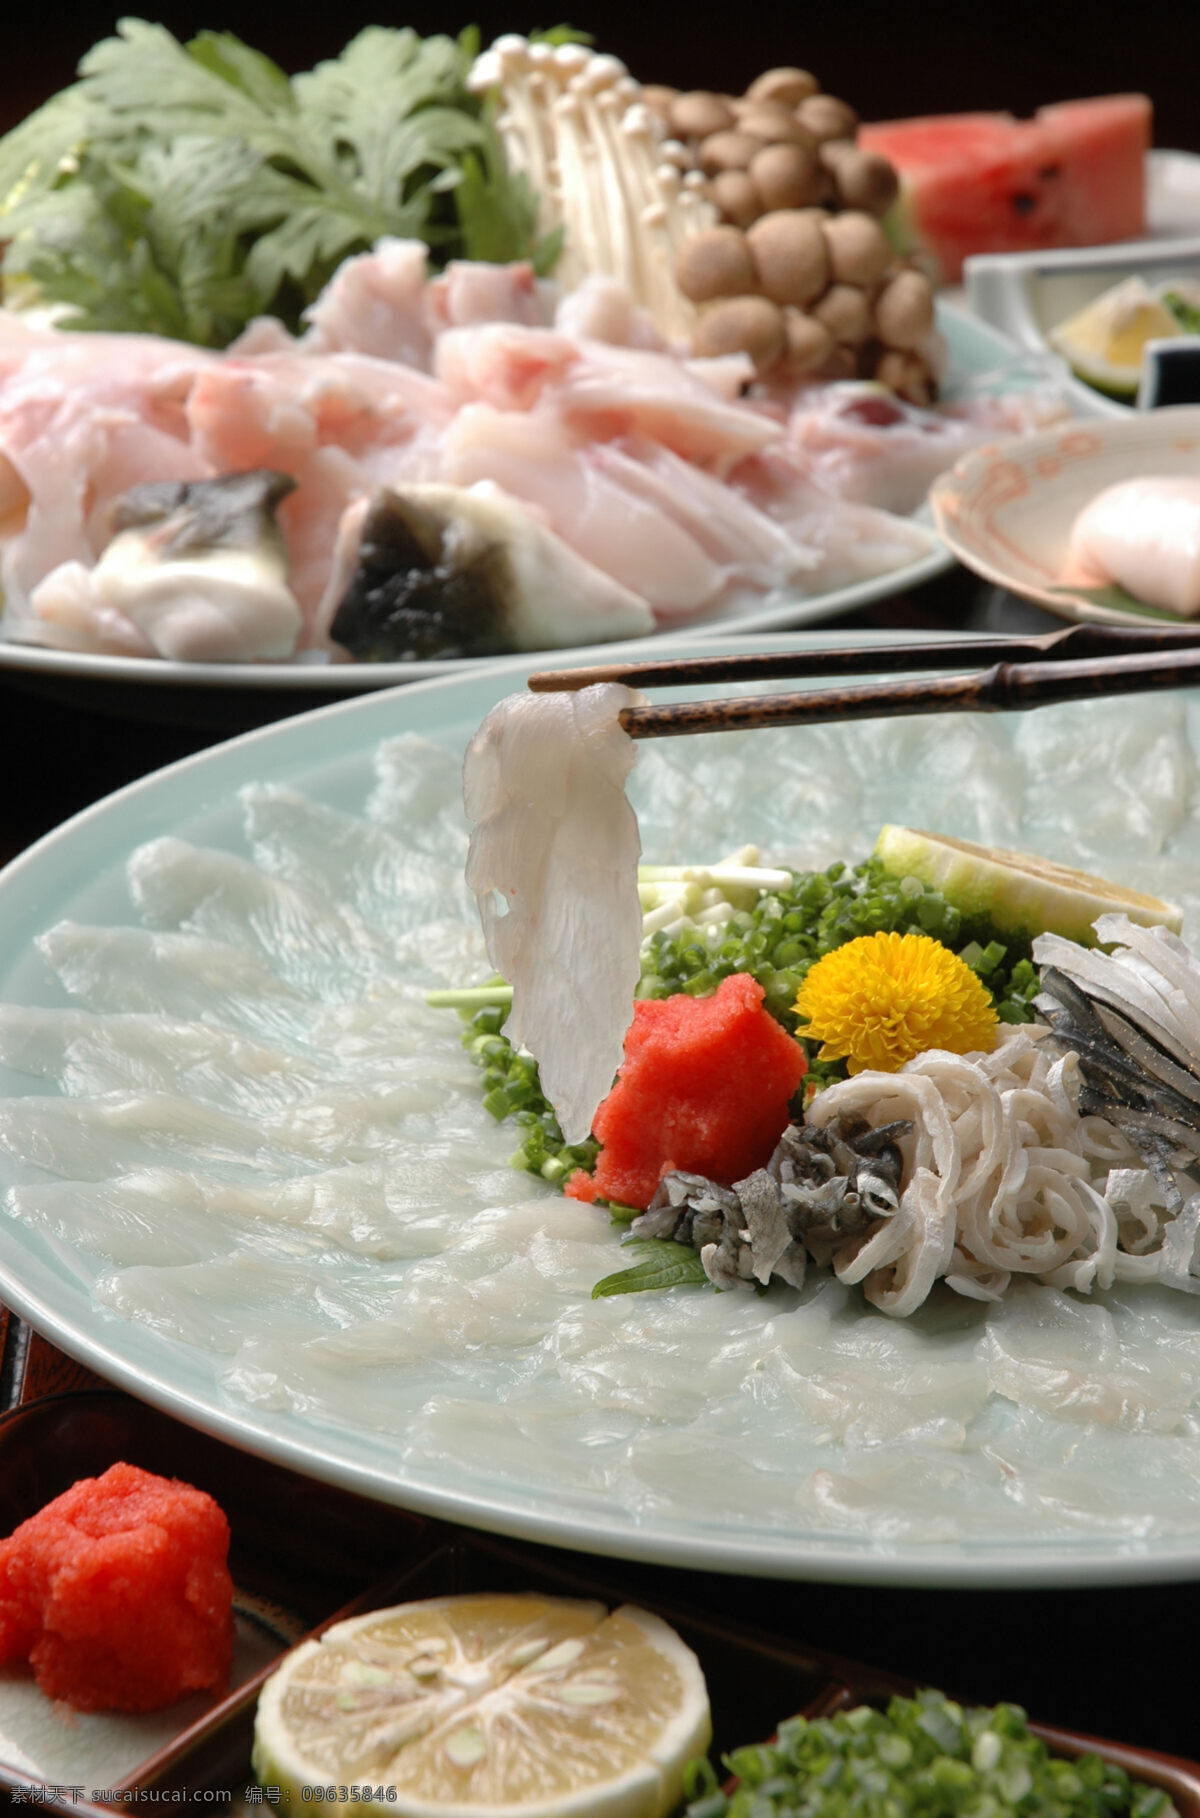 河豚 日本料理 河豚料理 河豚刺身 生鱼片 日式料理 日式美食 美食 鱼 鲜 风味美食 特色美食 日本美食 日本食物 日本饮食 饮食文化 餐饮美食